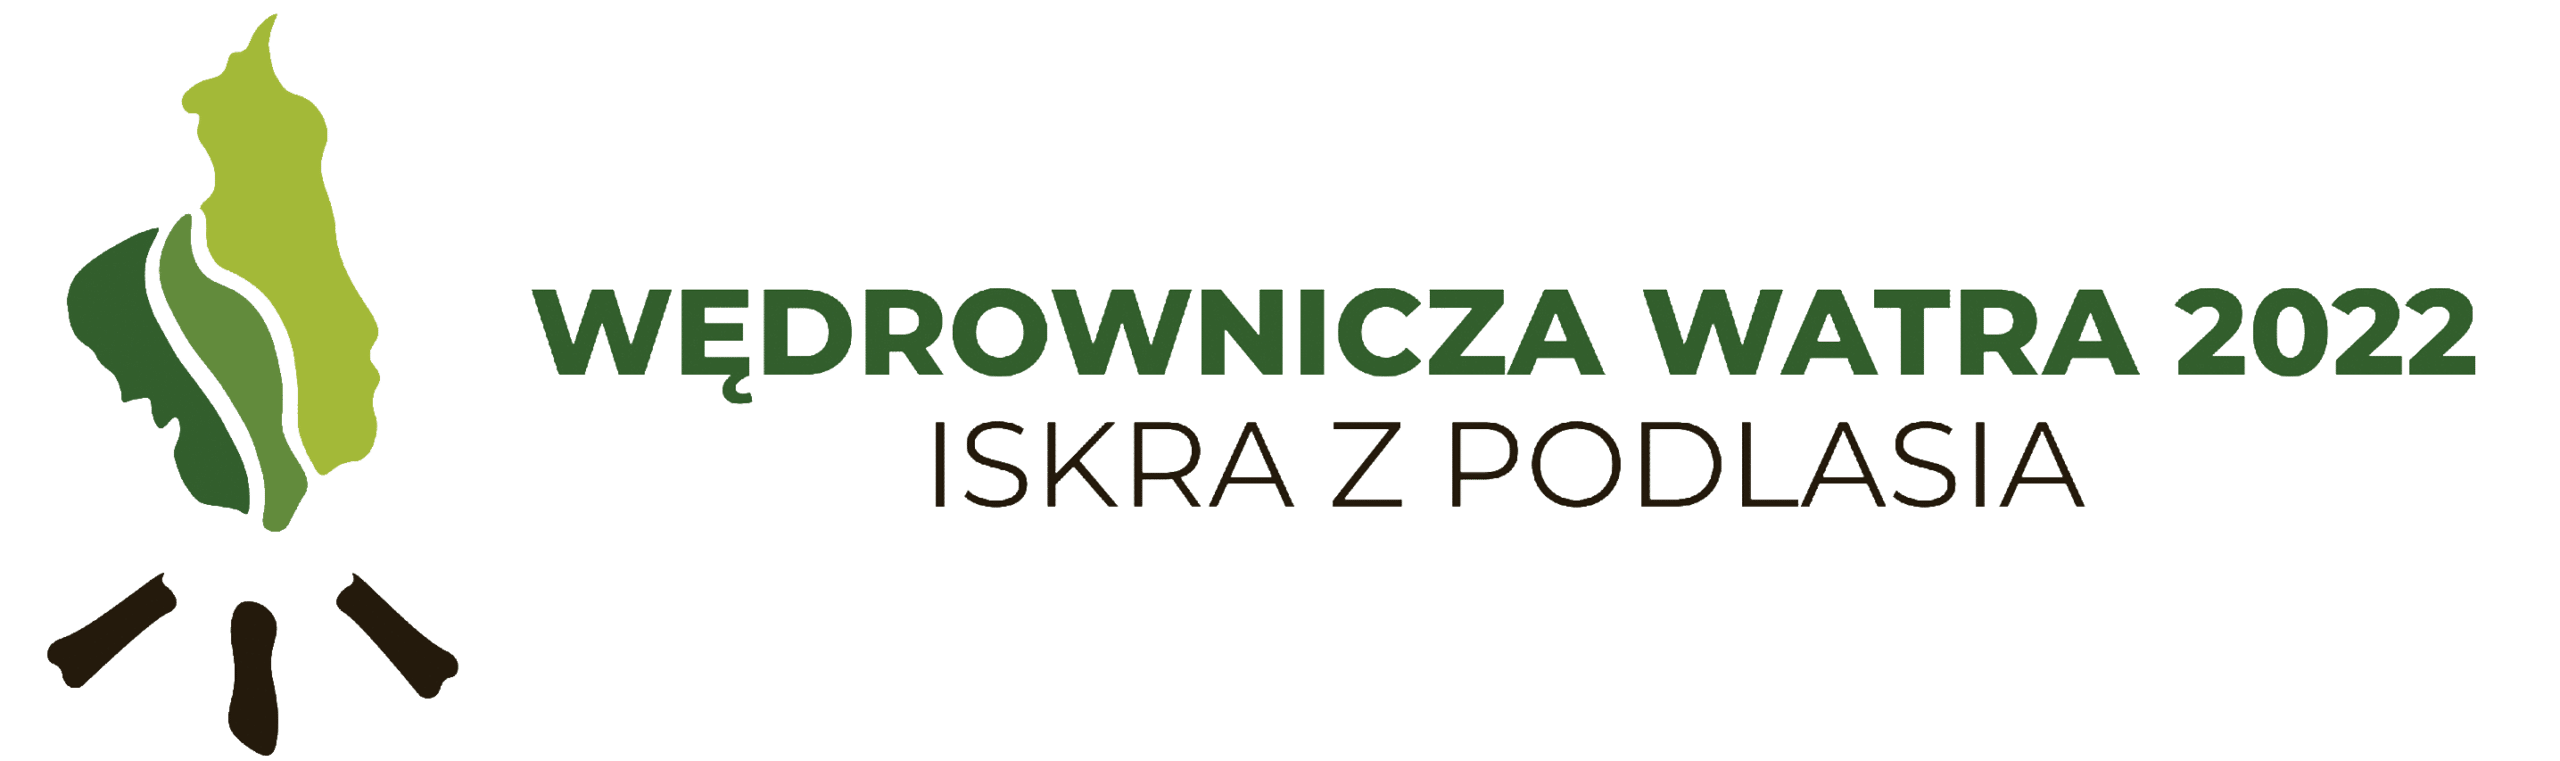 logo_Wędrownicza Watra 2022_Iskra z Podlasia